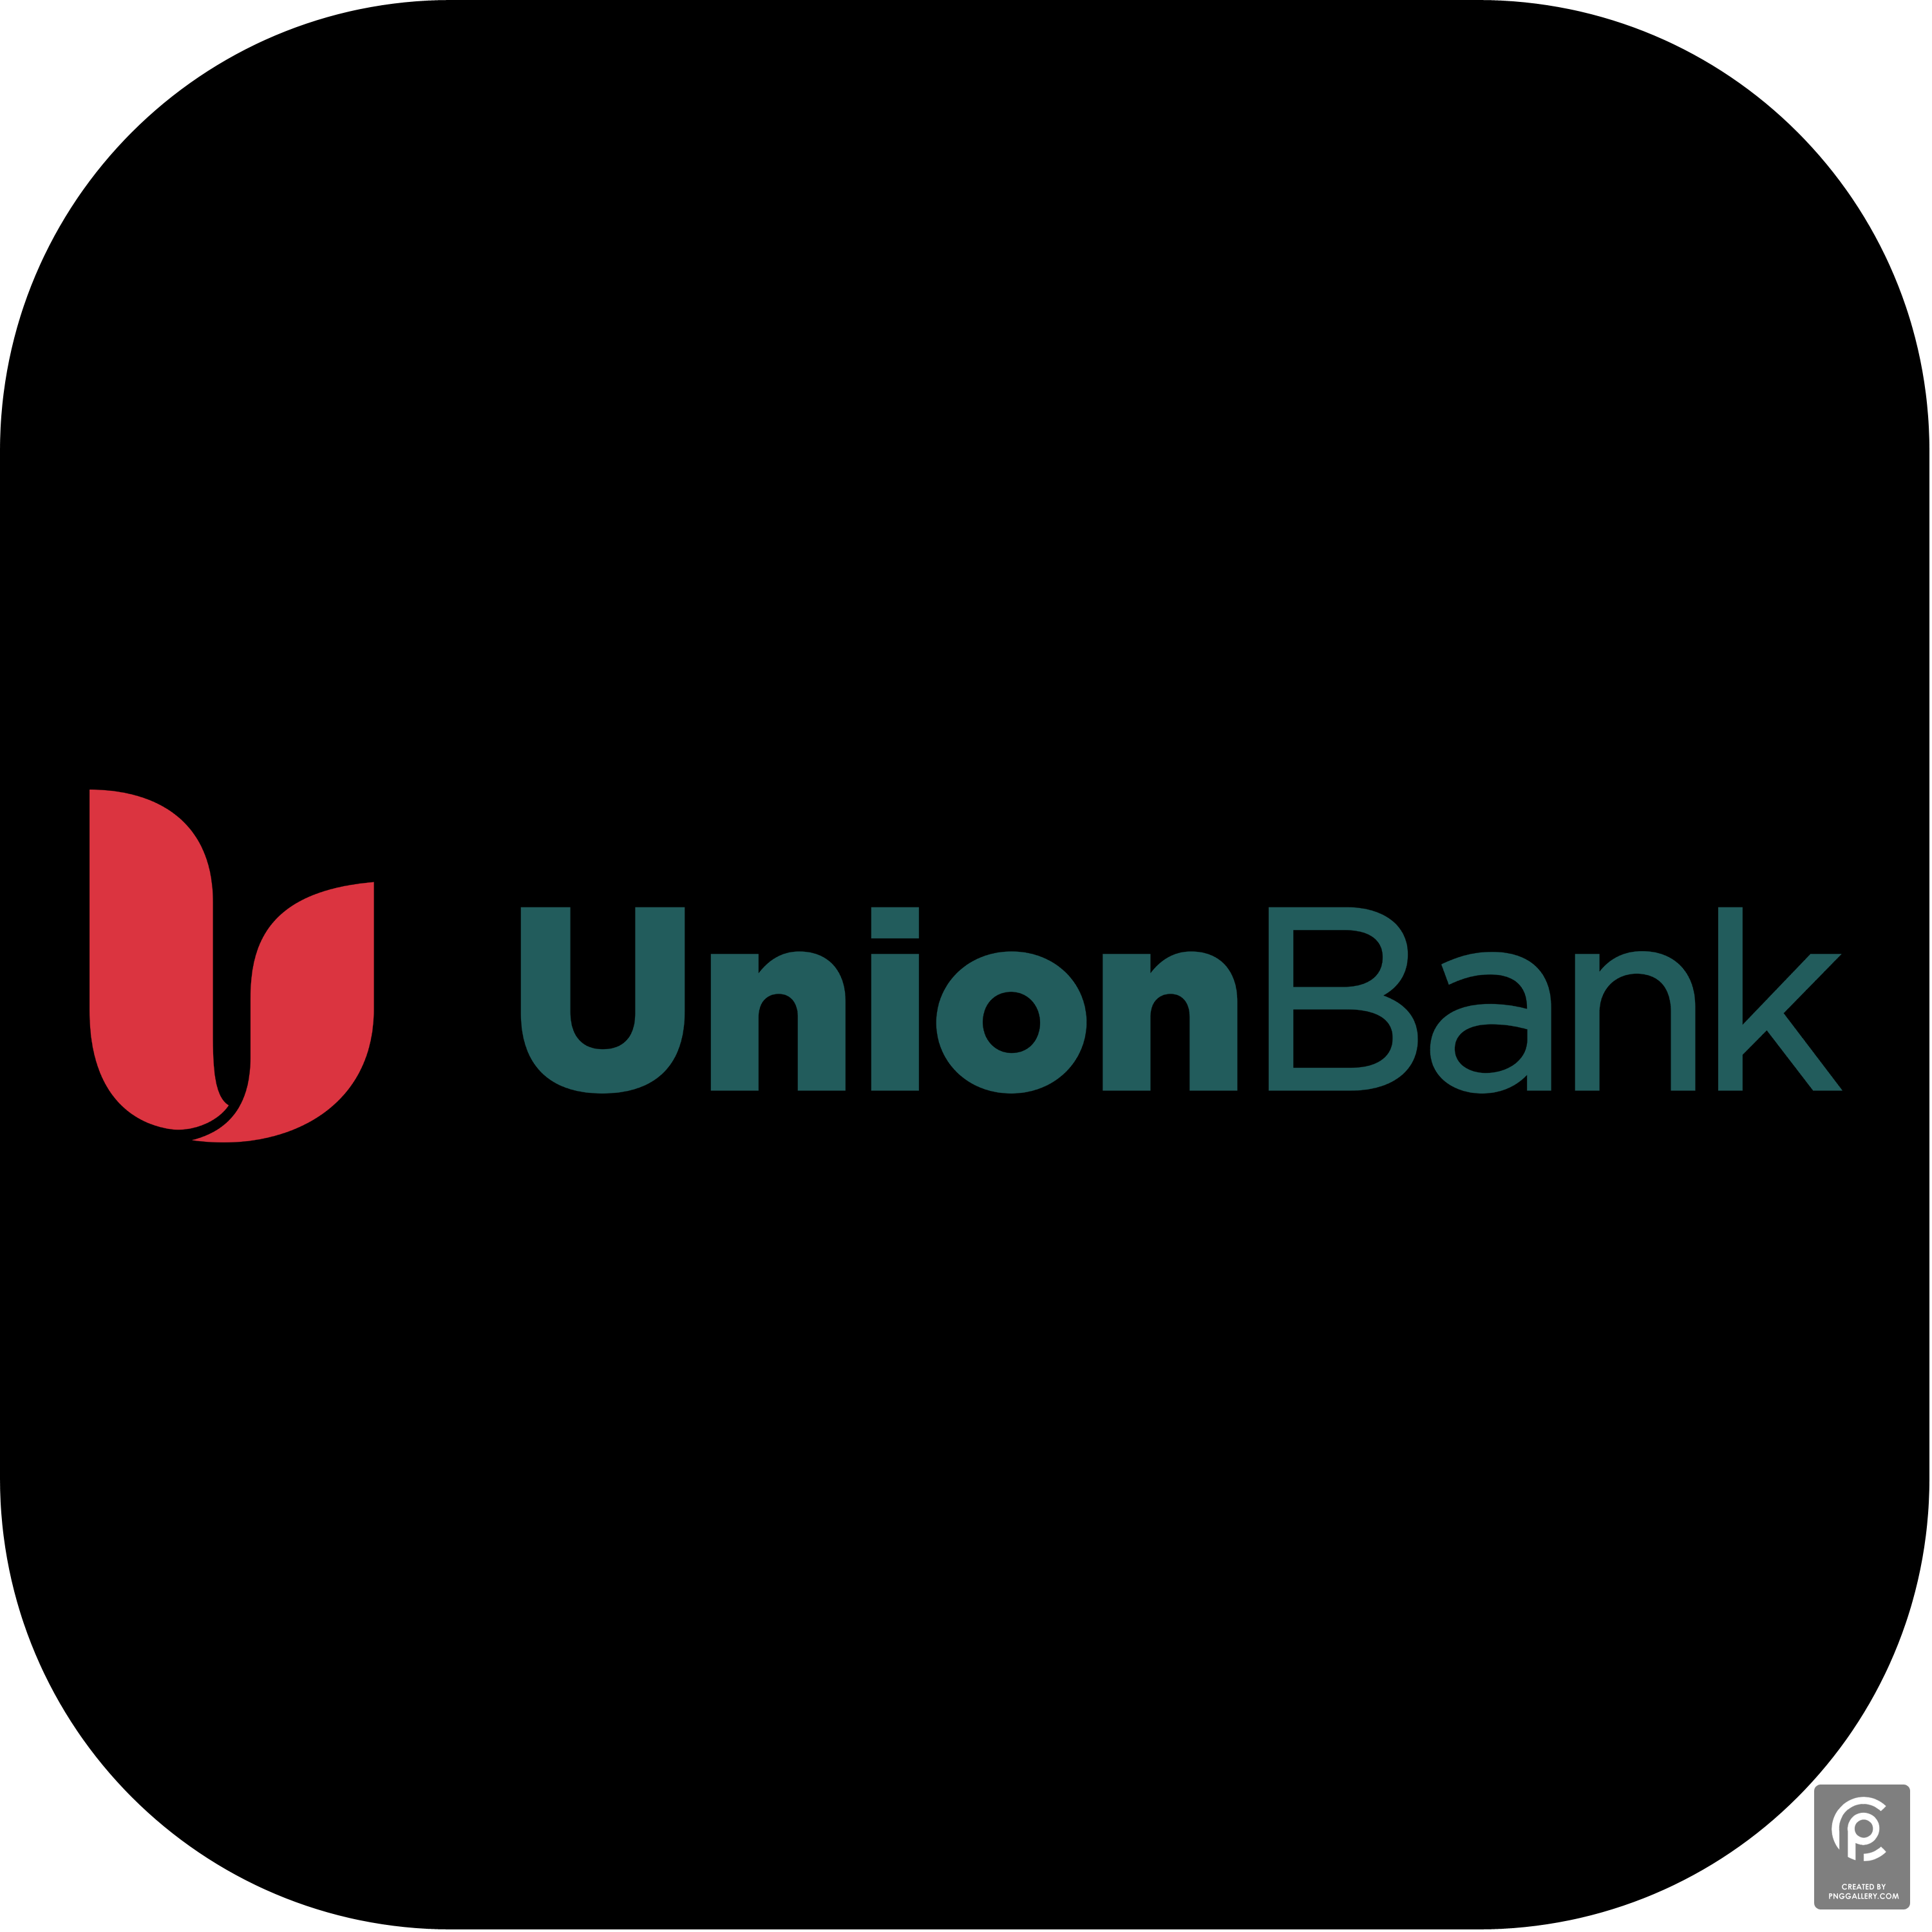 Union Bank 2017 Logo Transparent Picture